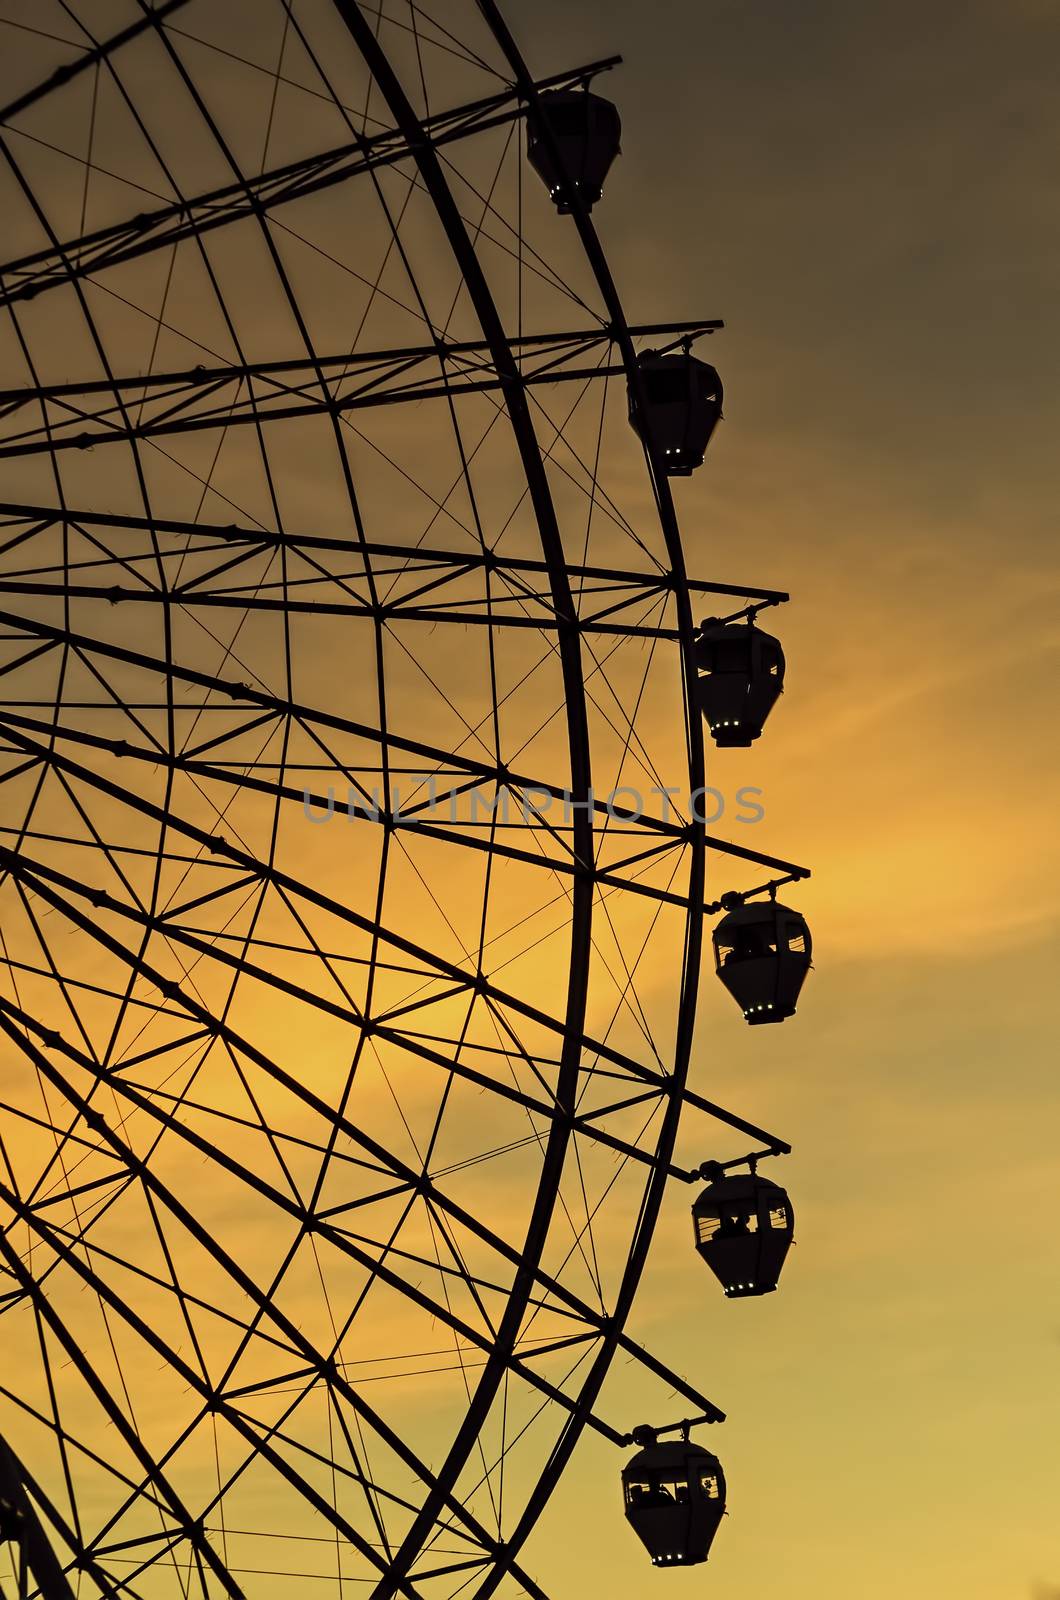 Sunset Ferris Wheel by tonyoquias